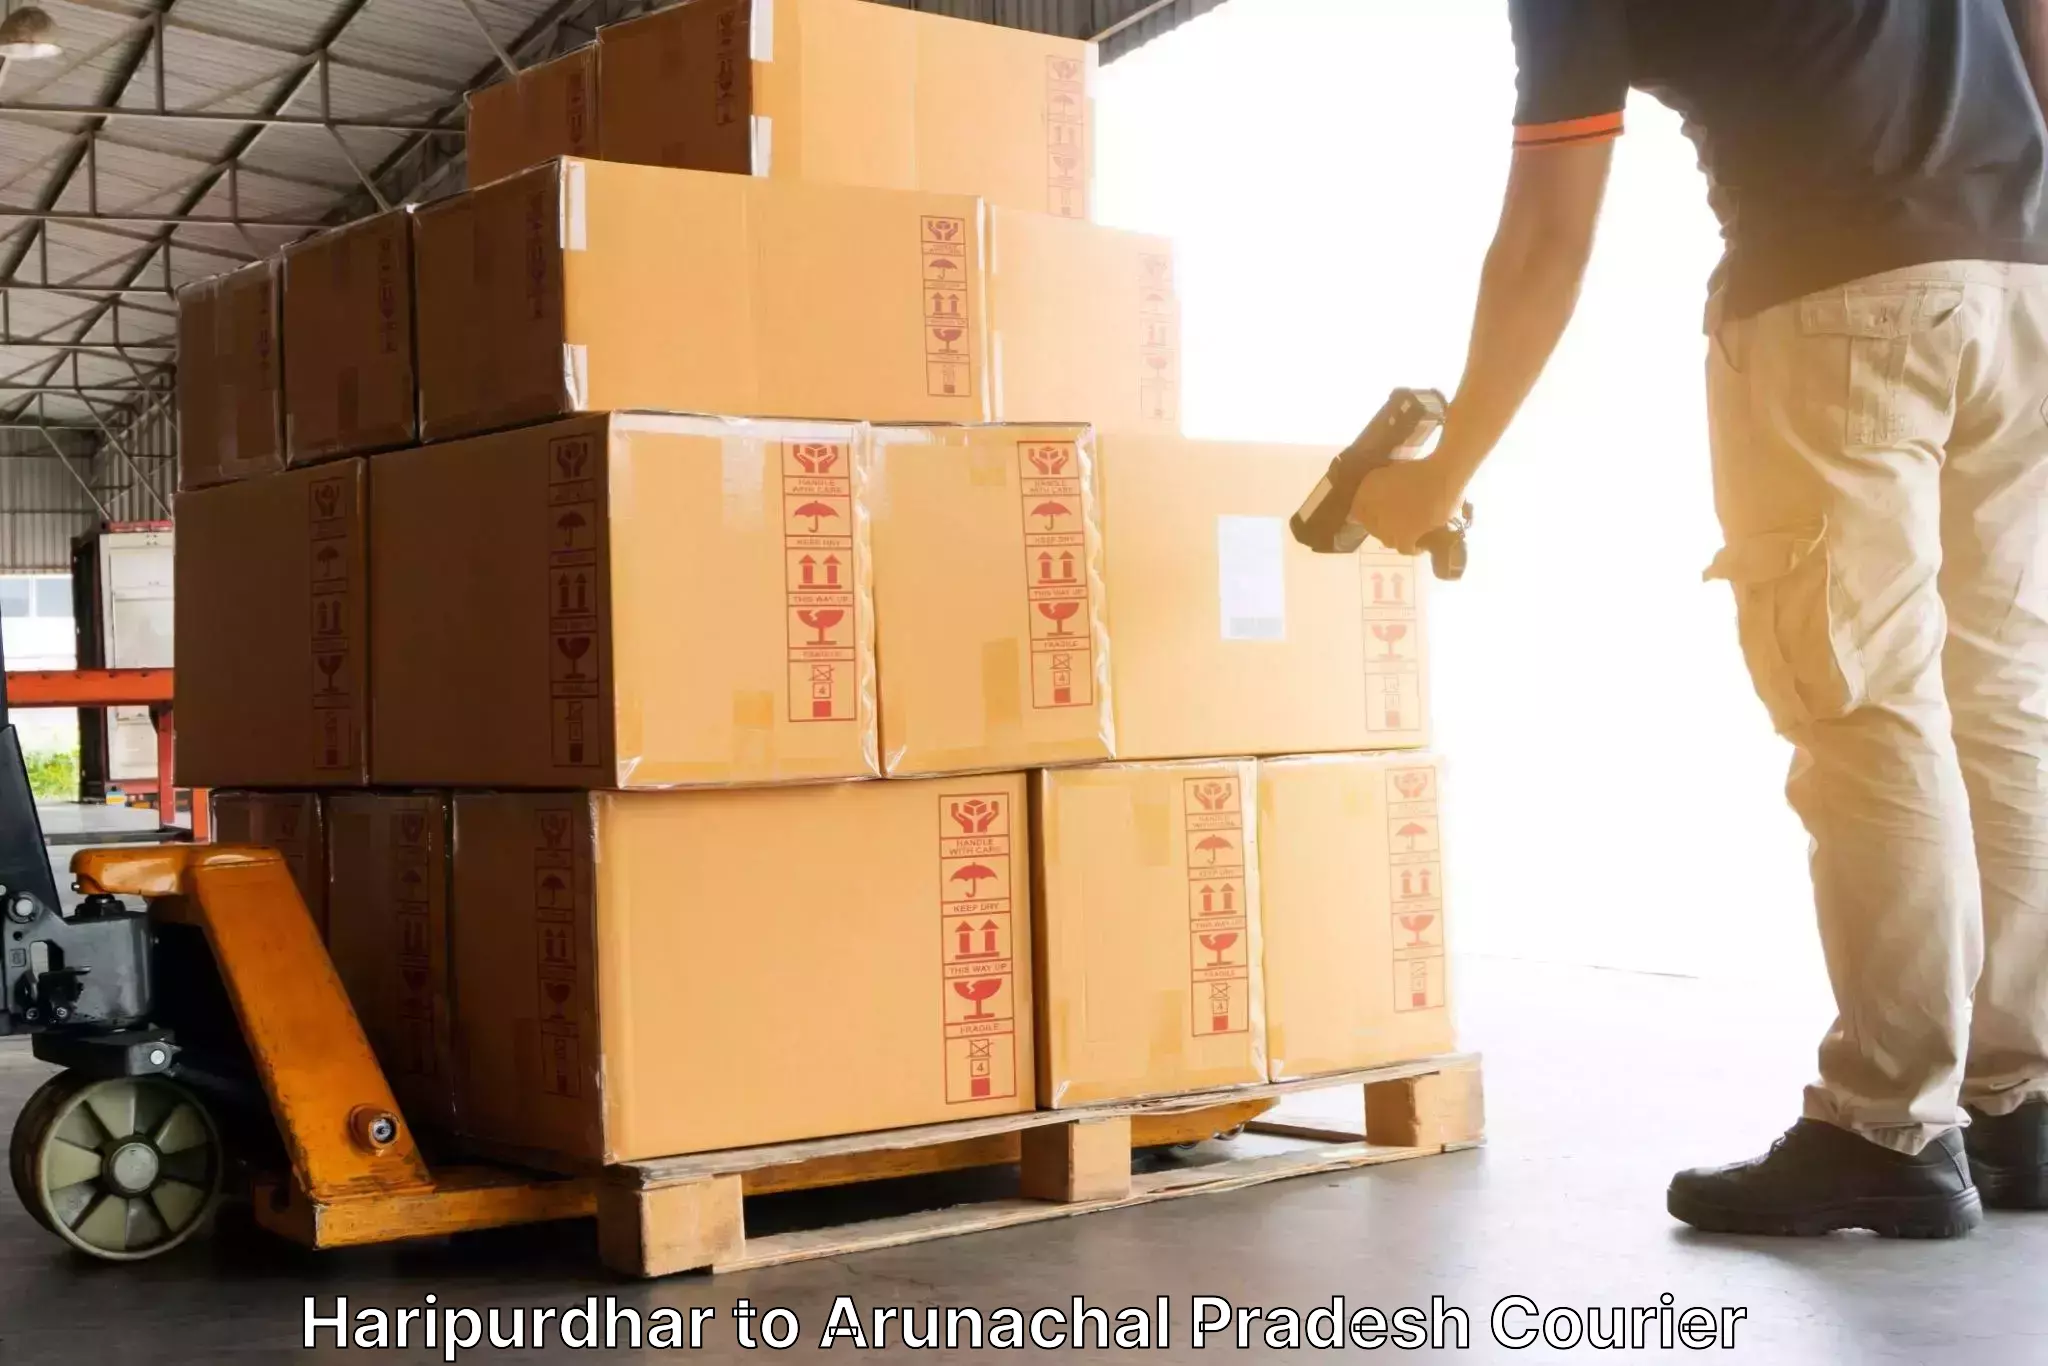 Quick courier services Haripurdhar to Arunachal Pradesh